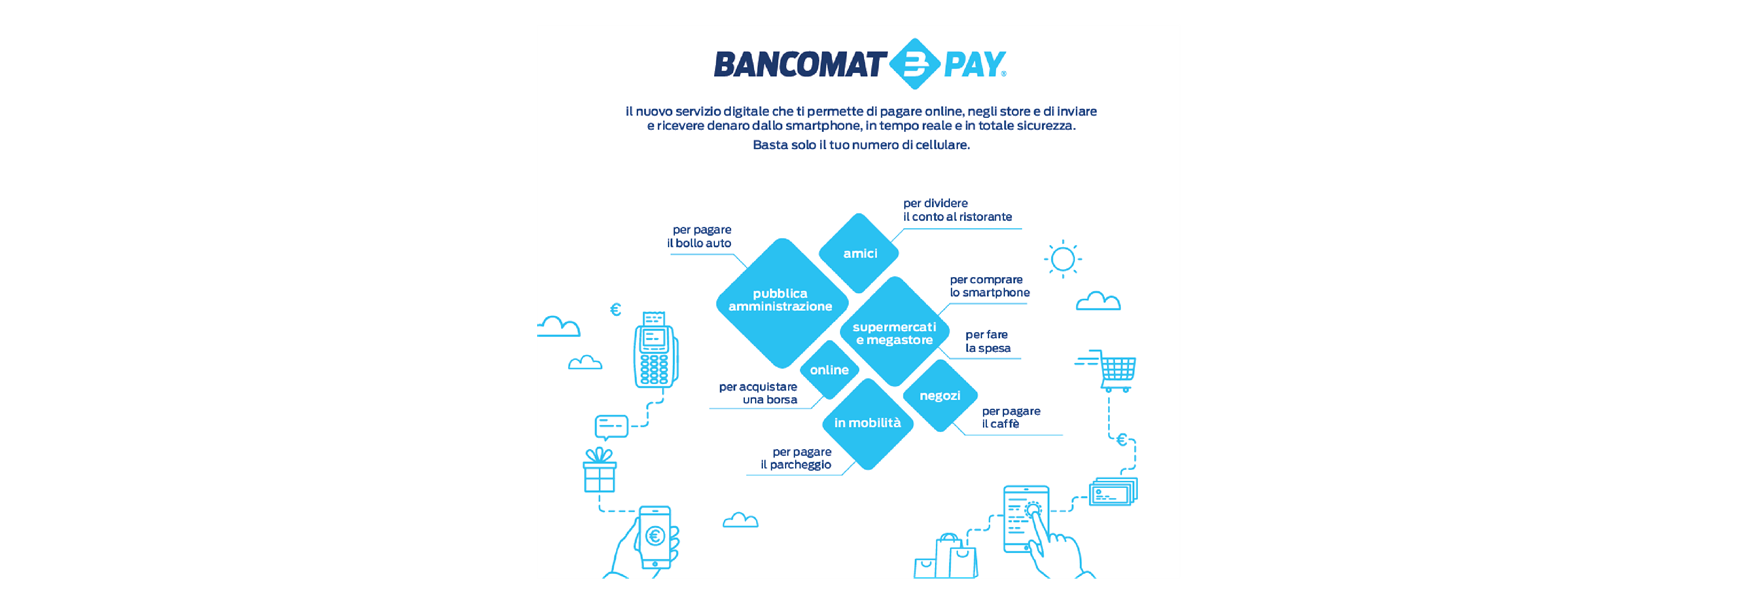 Bancomat Pay 2 